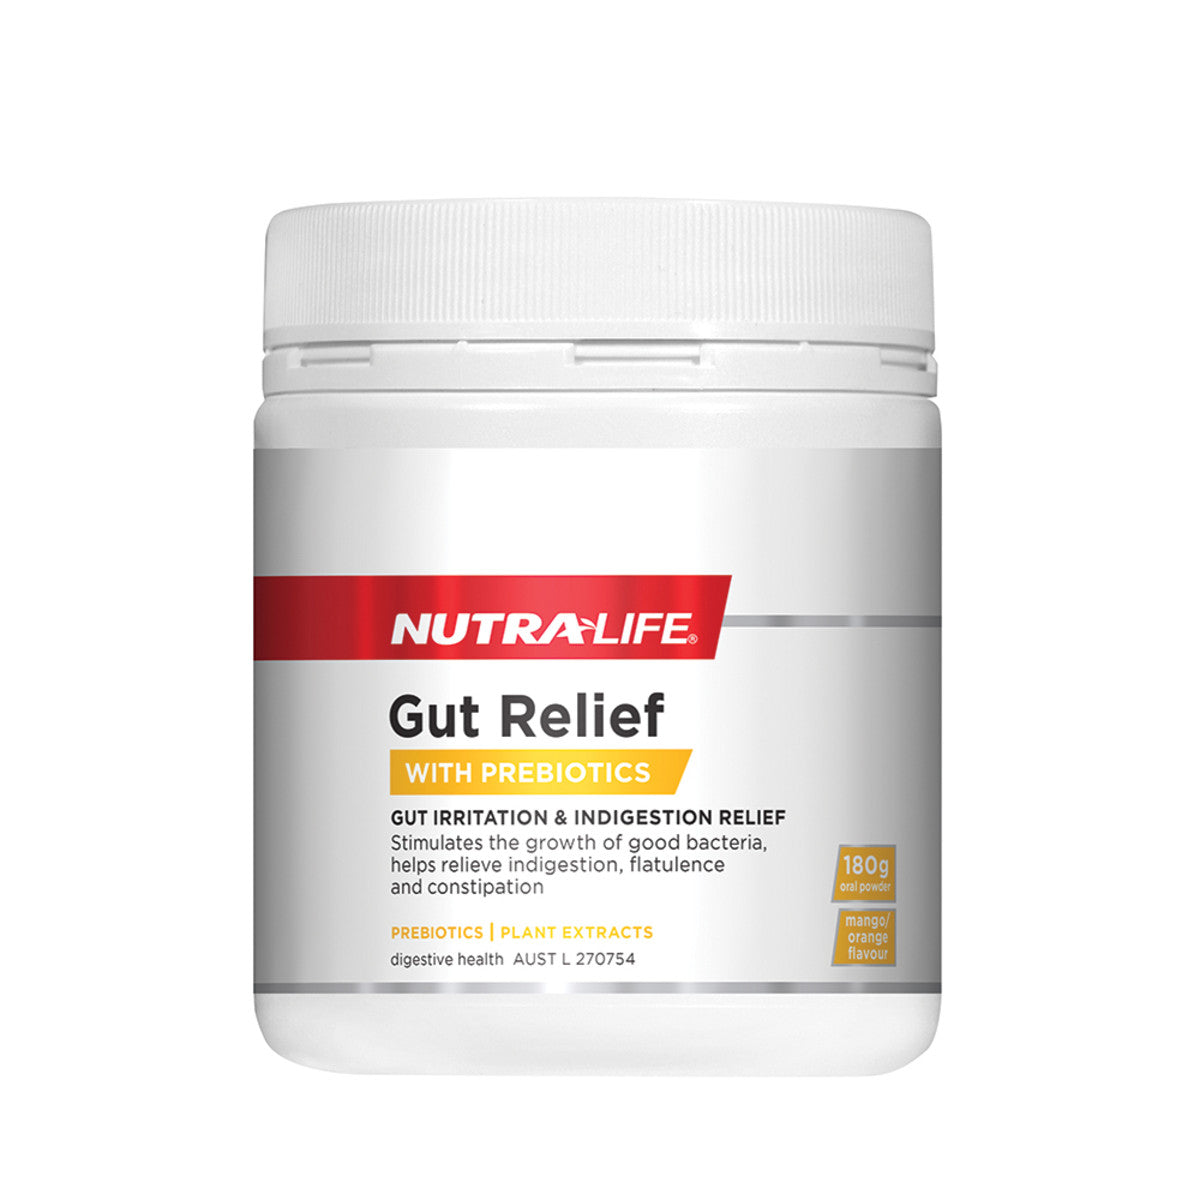 NutraLife Gut Relief Oral Powder 180g